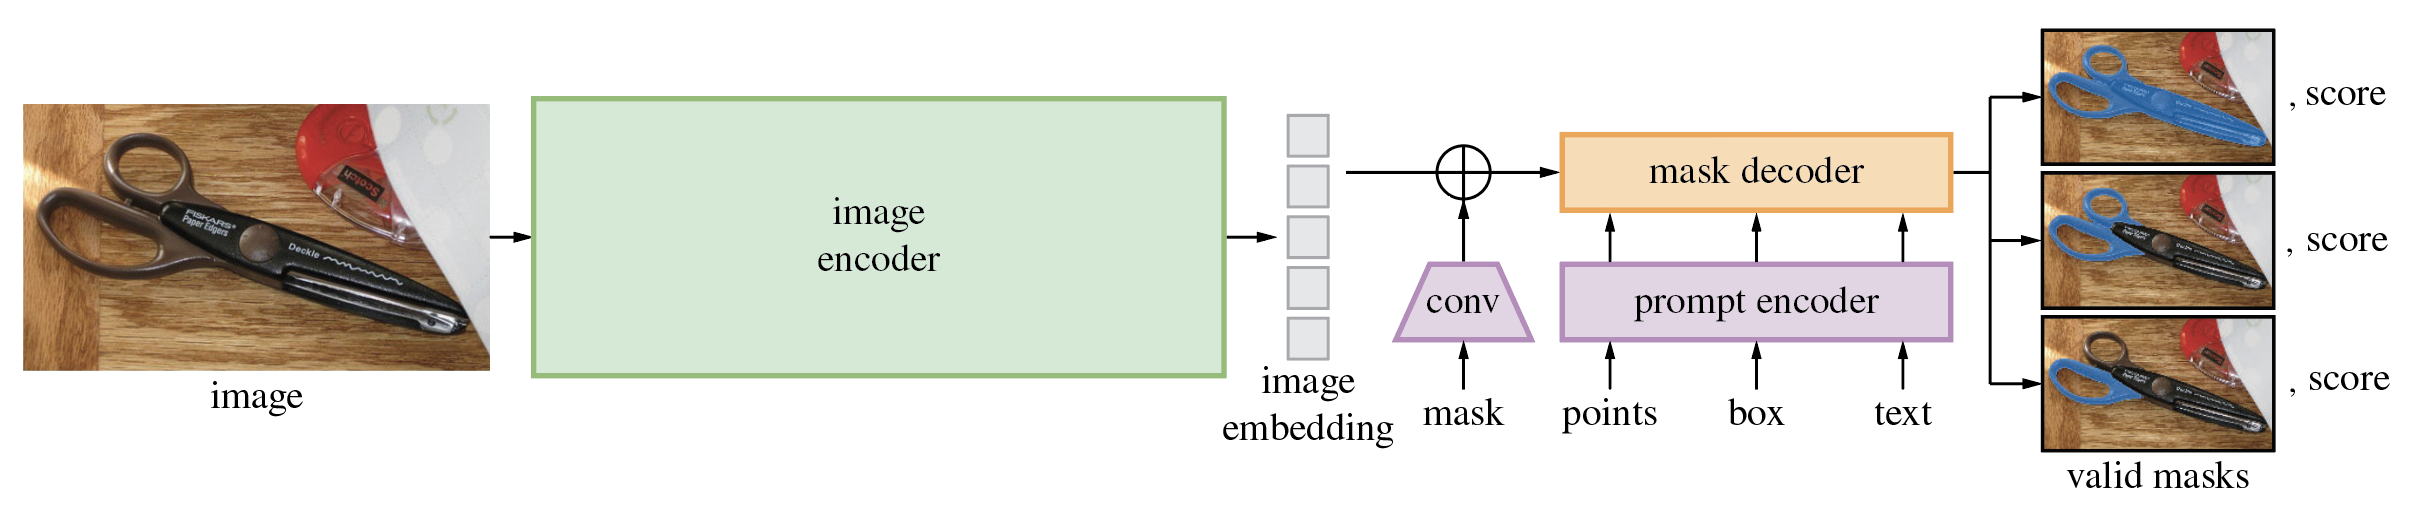 【计算机视觉 | 目标检测 | 图像分割】Grounded Segment Anything：Grounding DINO + Segment Anything Model (SAM)介绍_torch_04